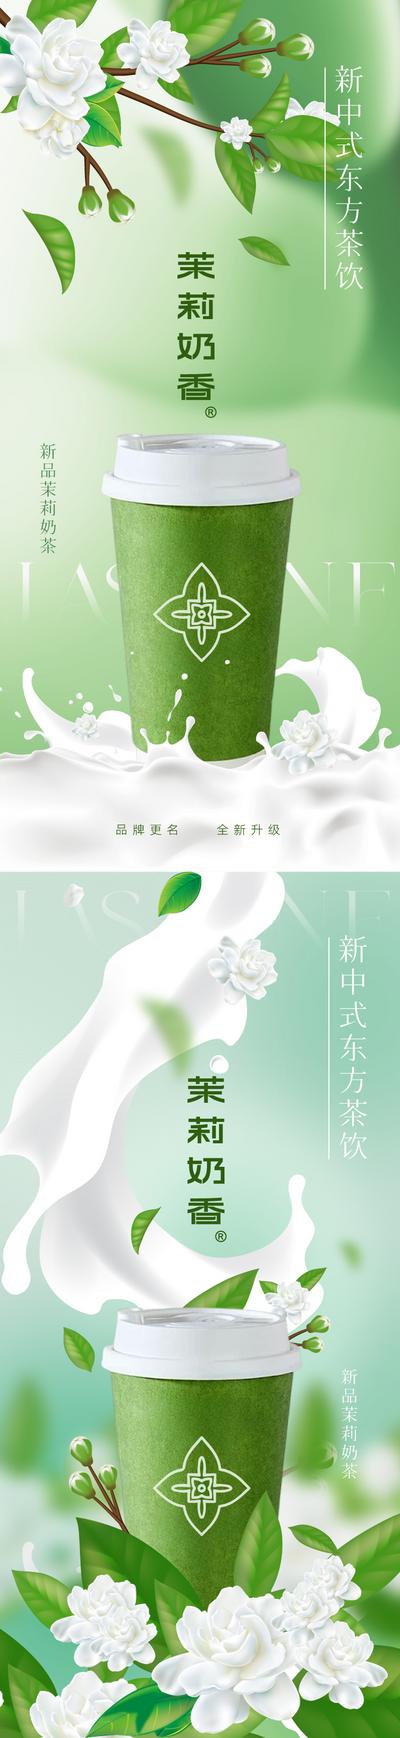 南门网 广告 海报 中式 奶茶 国潮 中国风 新中式 茉莉花 茶饮 国风 东方 美学 酸奶 清新 淡雅 新品 上新 宣传